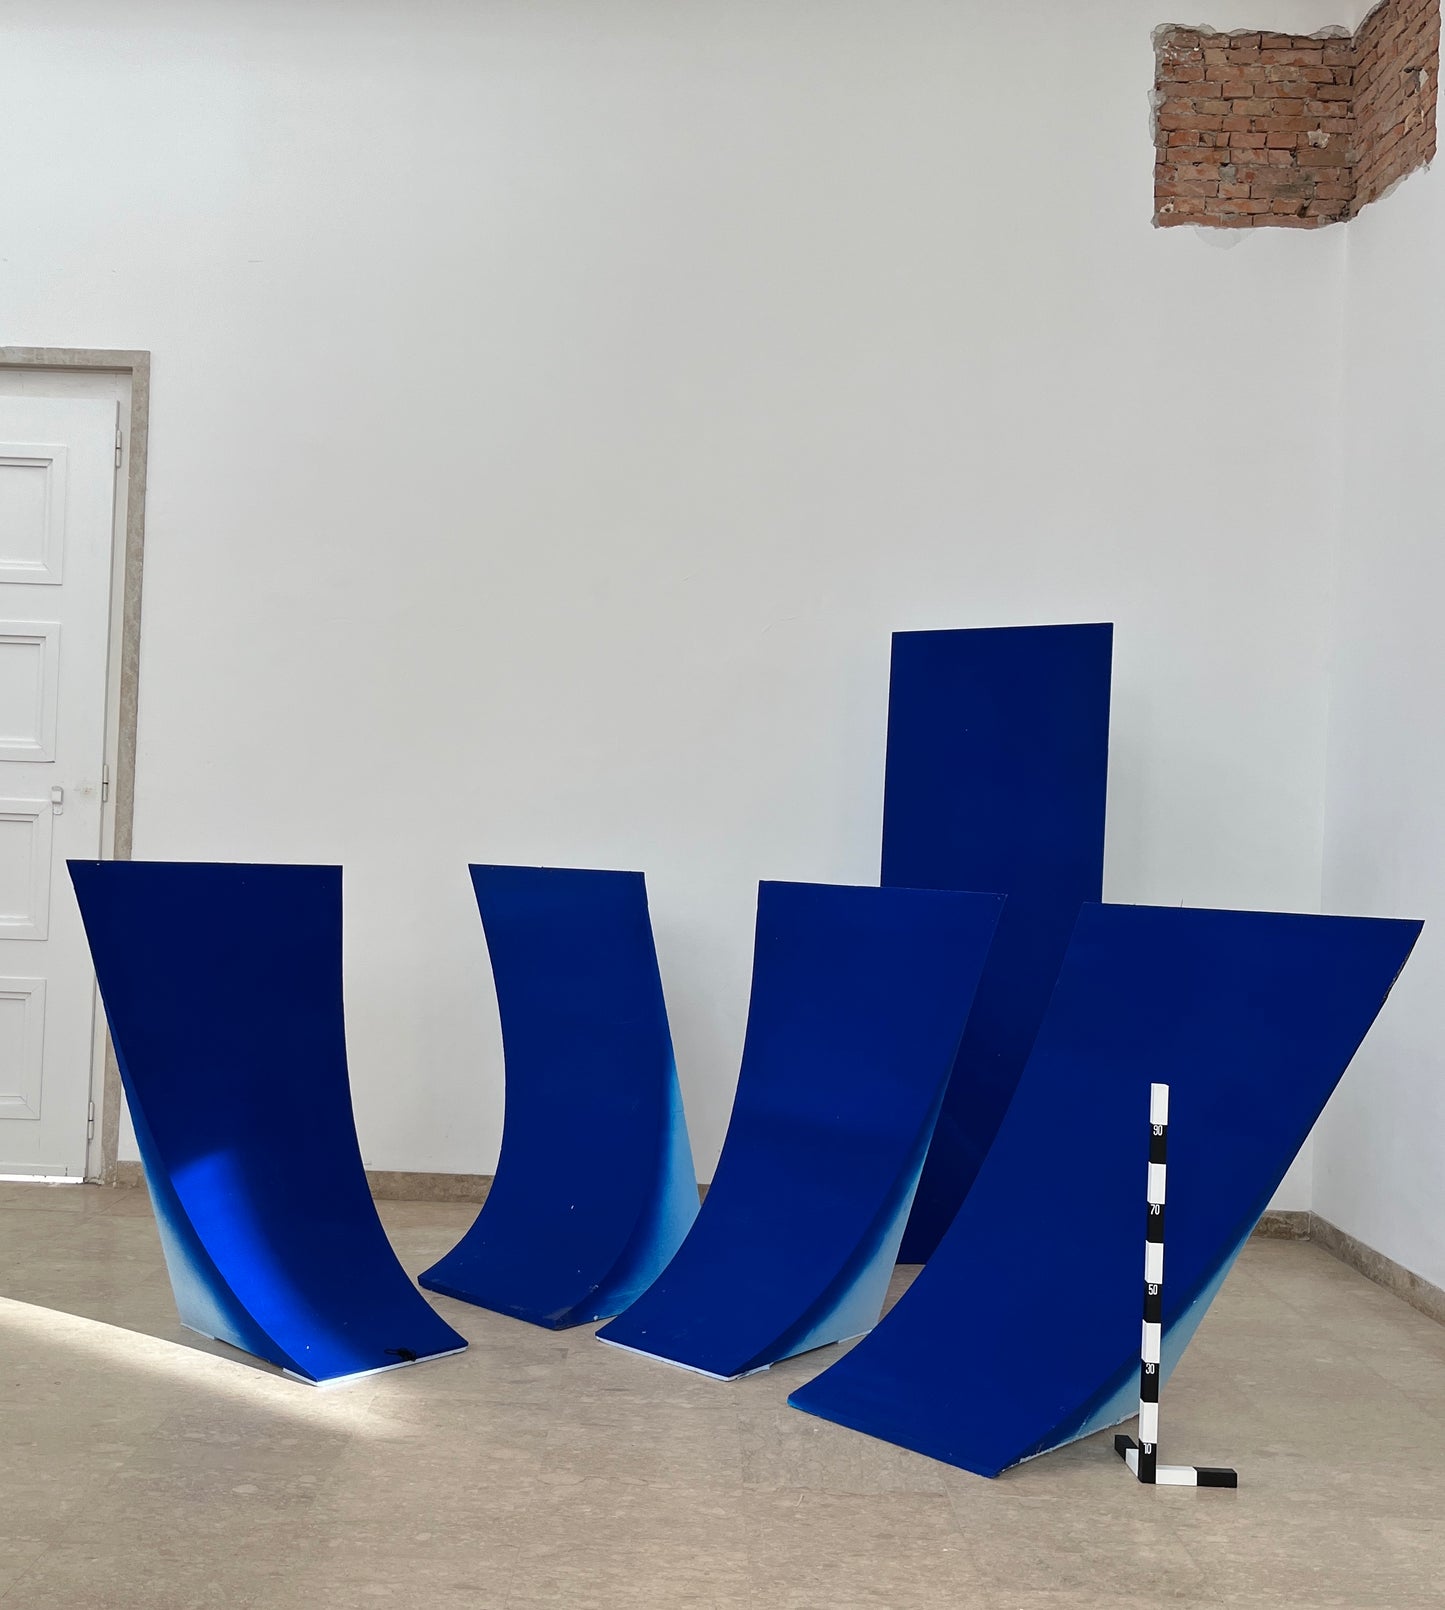 USED UP | Israeli Pavilion | Blue Polystyrene Blocks, 2.15.3